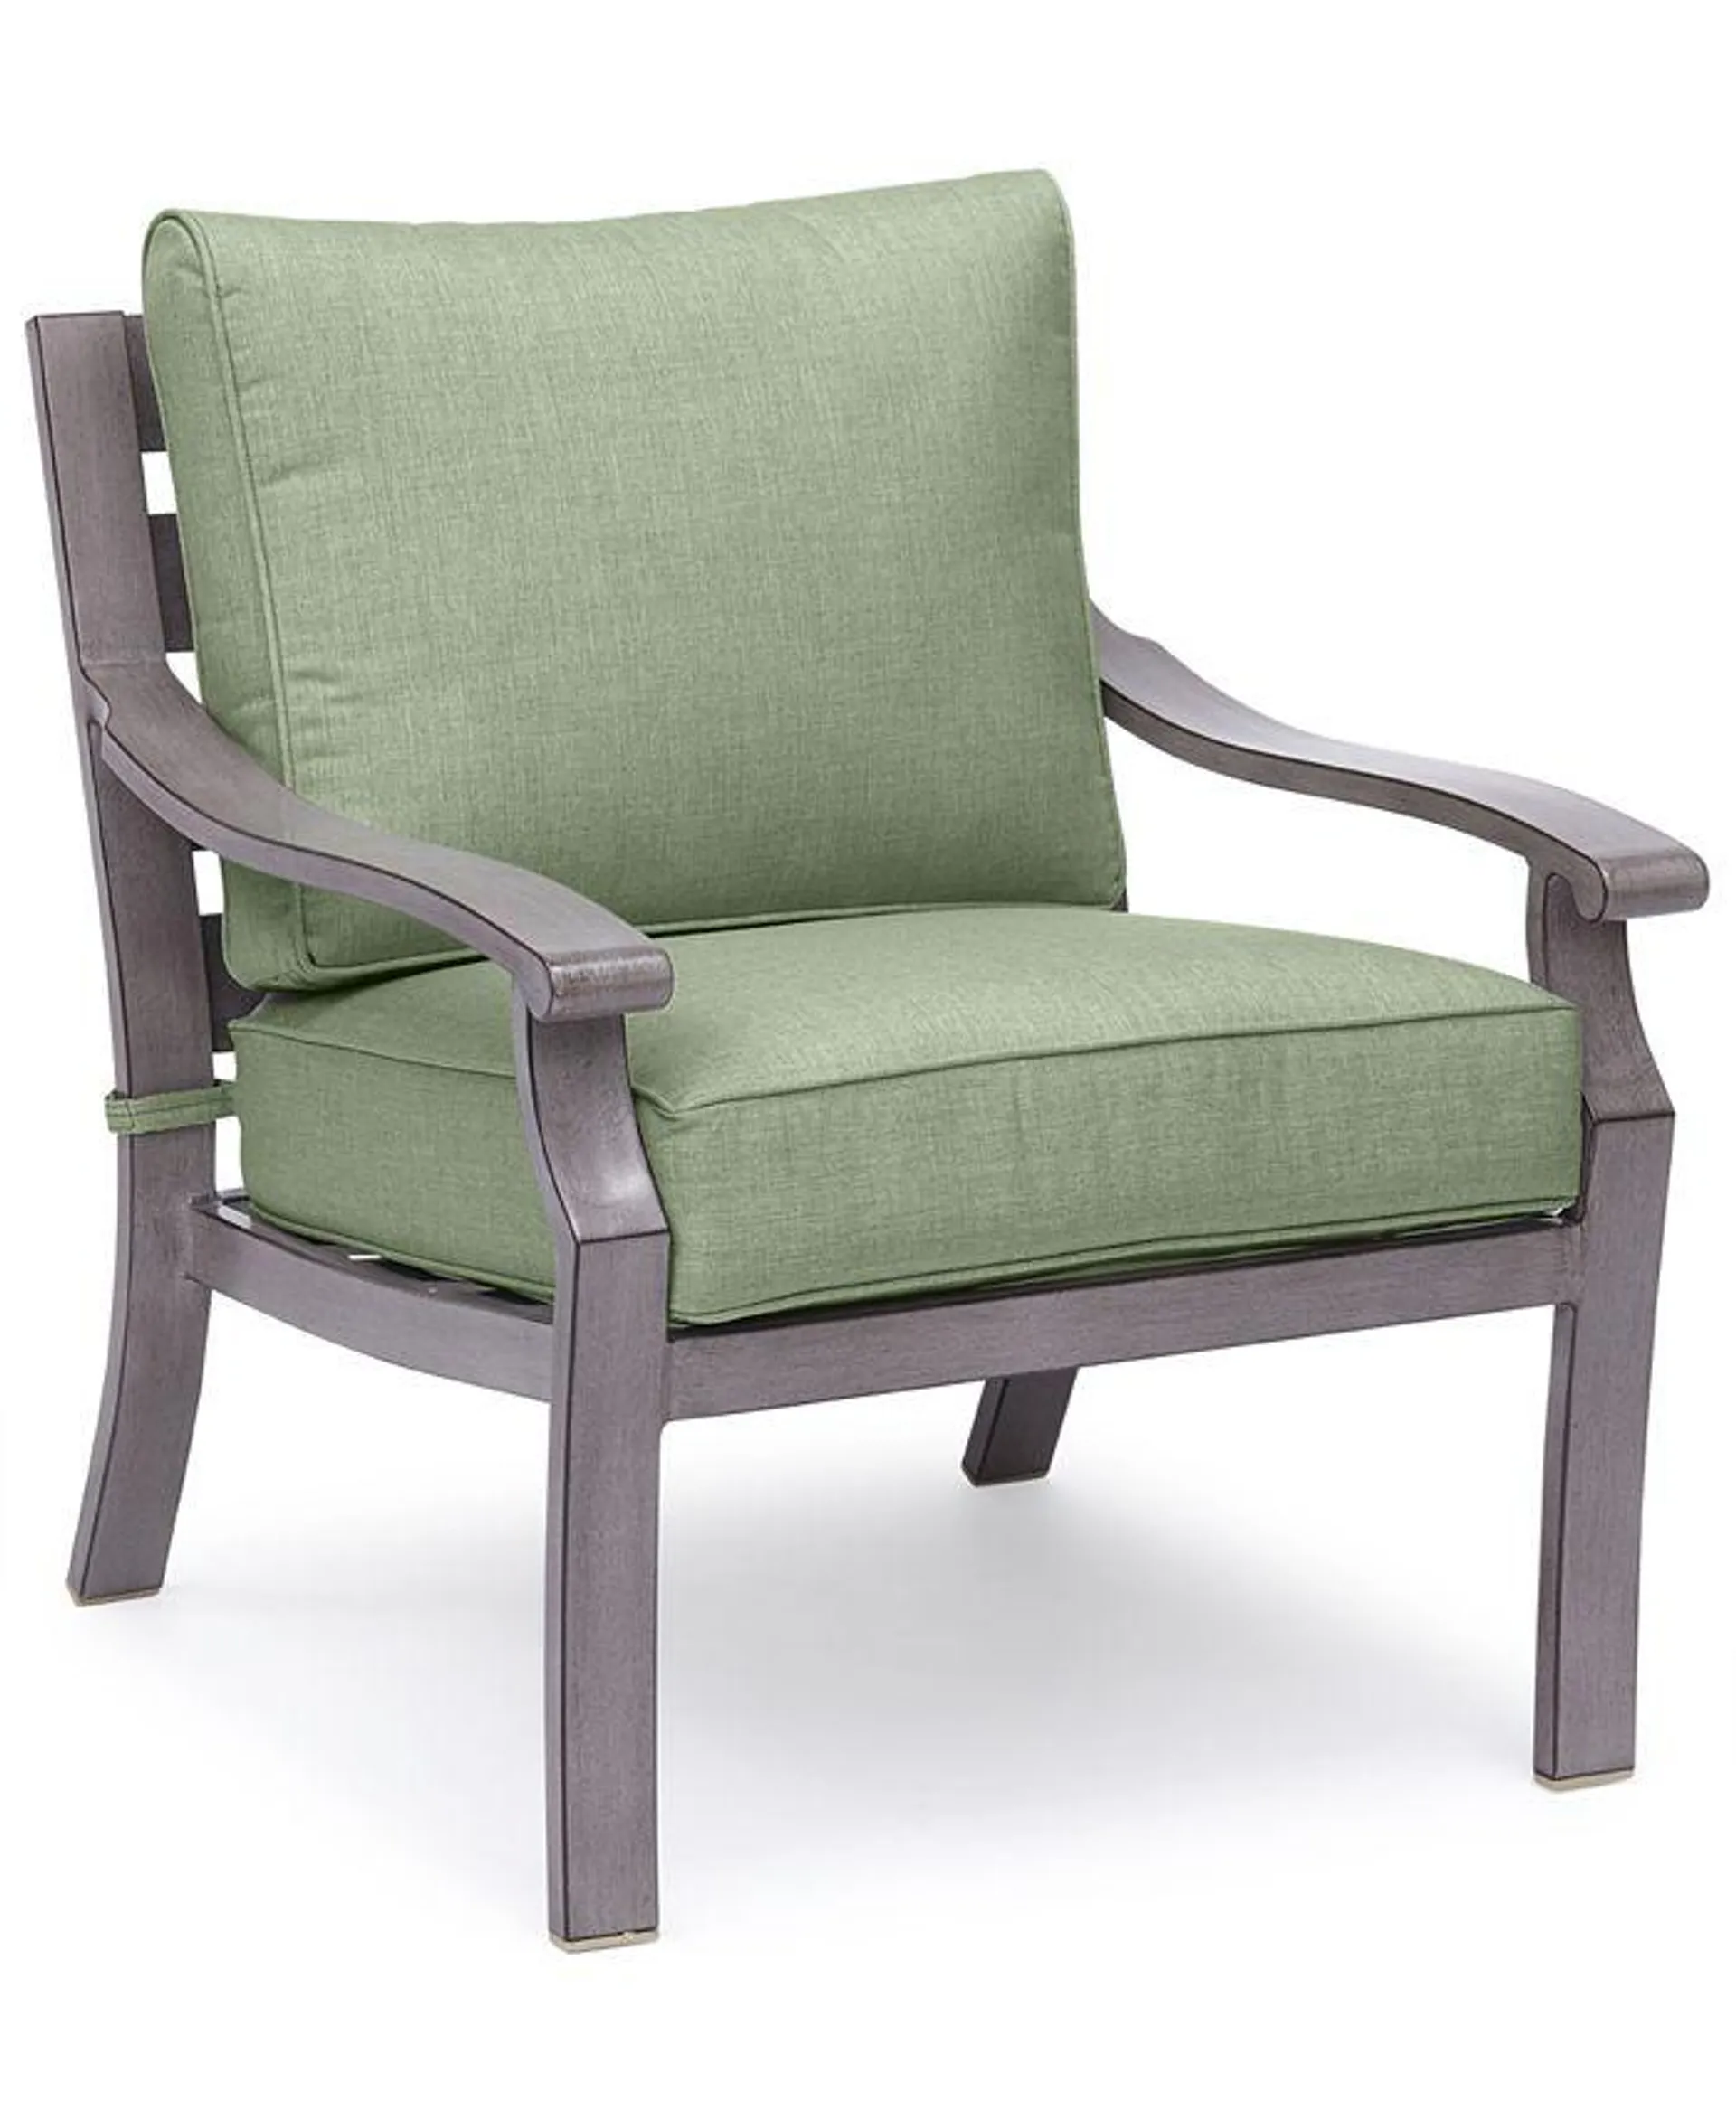 Tara Aluminum Outdoor Club Chair, Created for Macy's